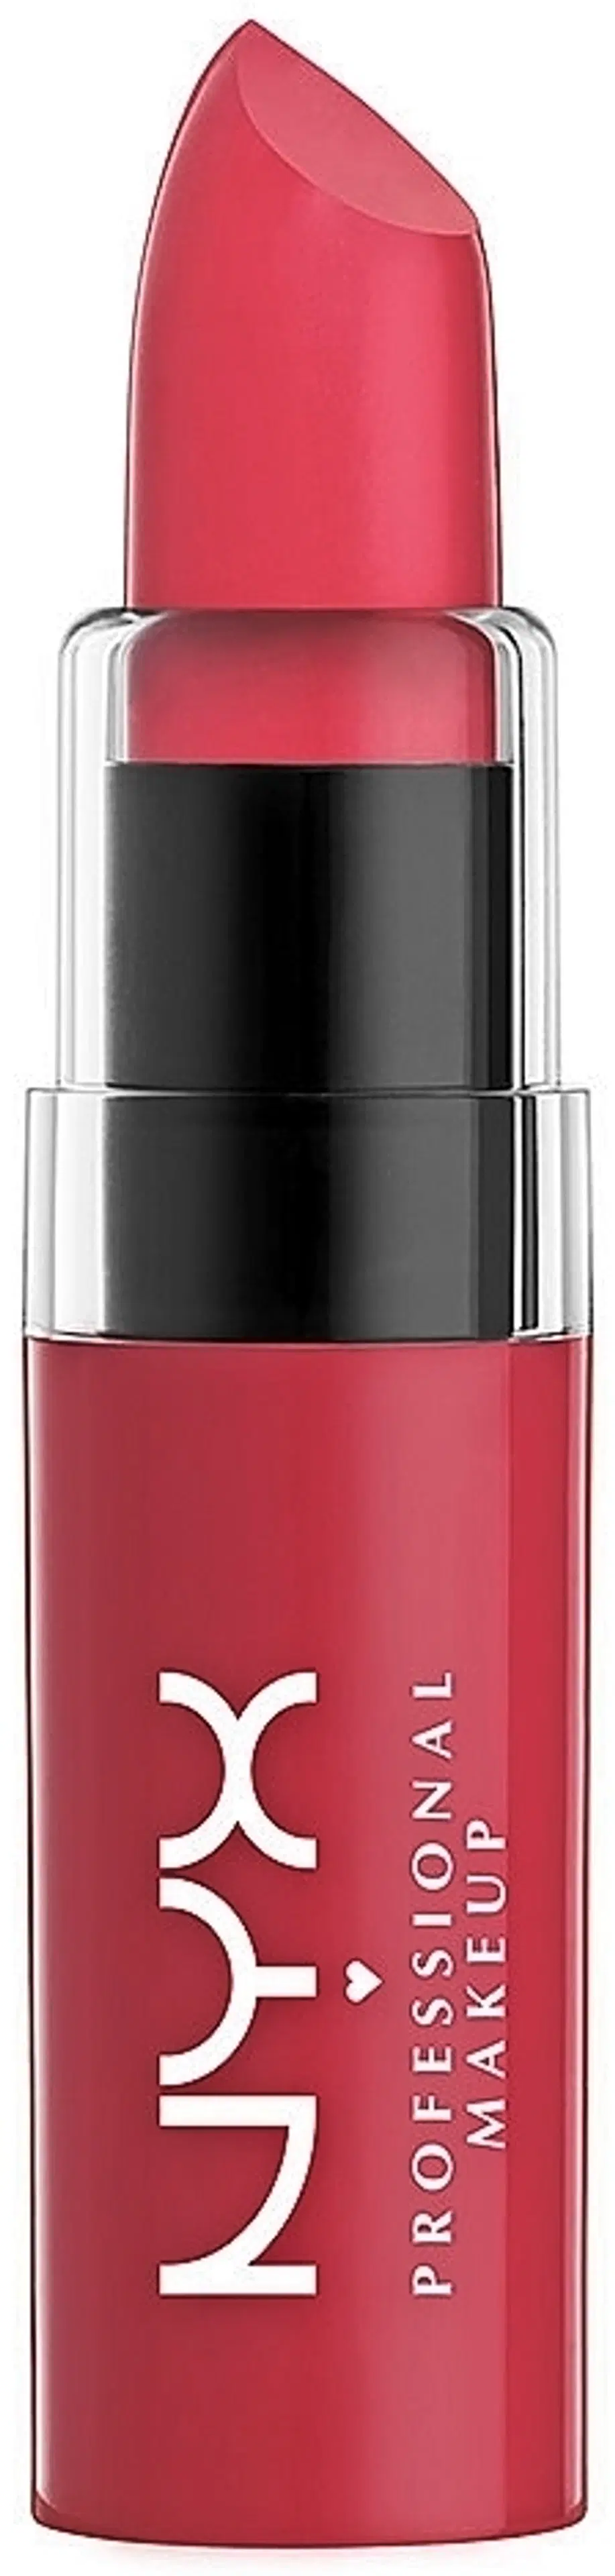 NYX Professional Makeup Butter Lipstick huulipuna  4,5g